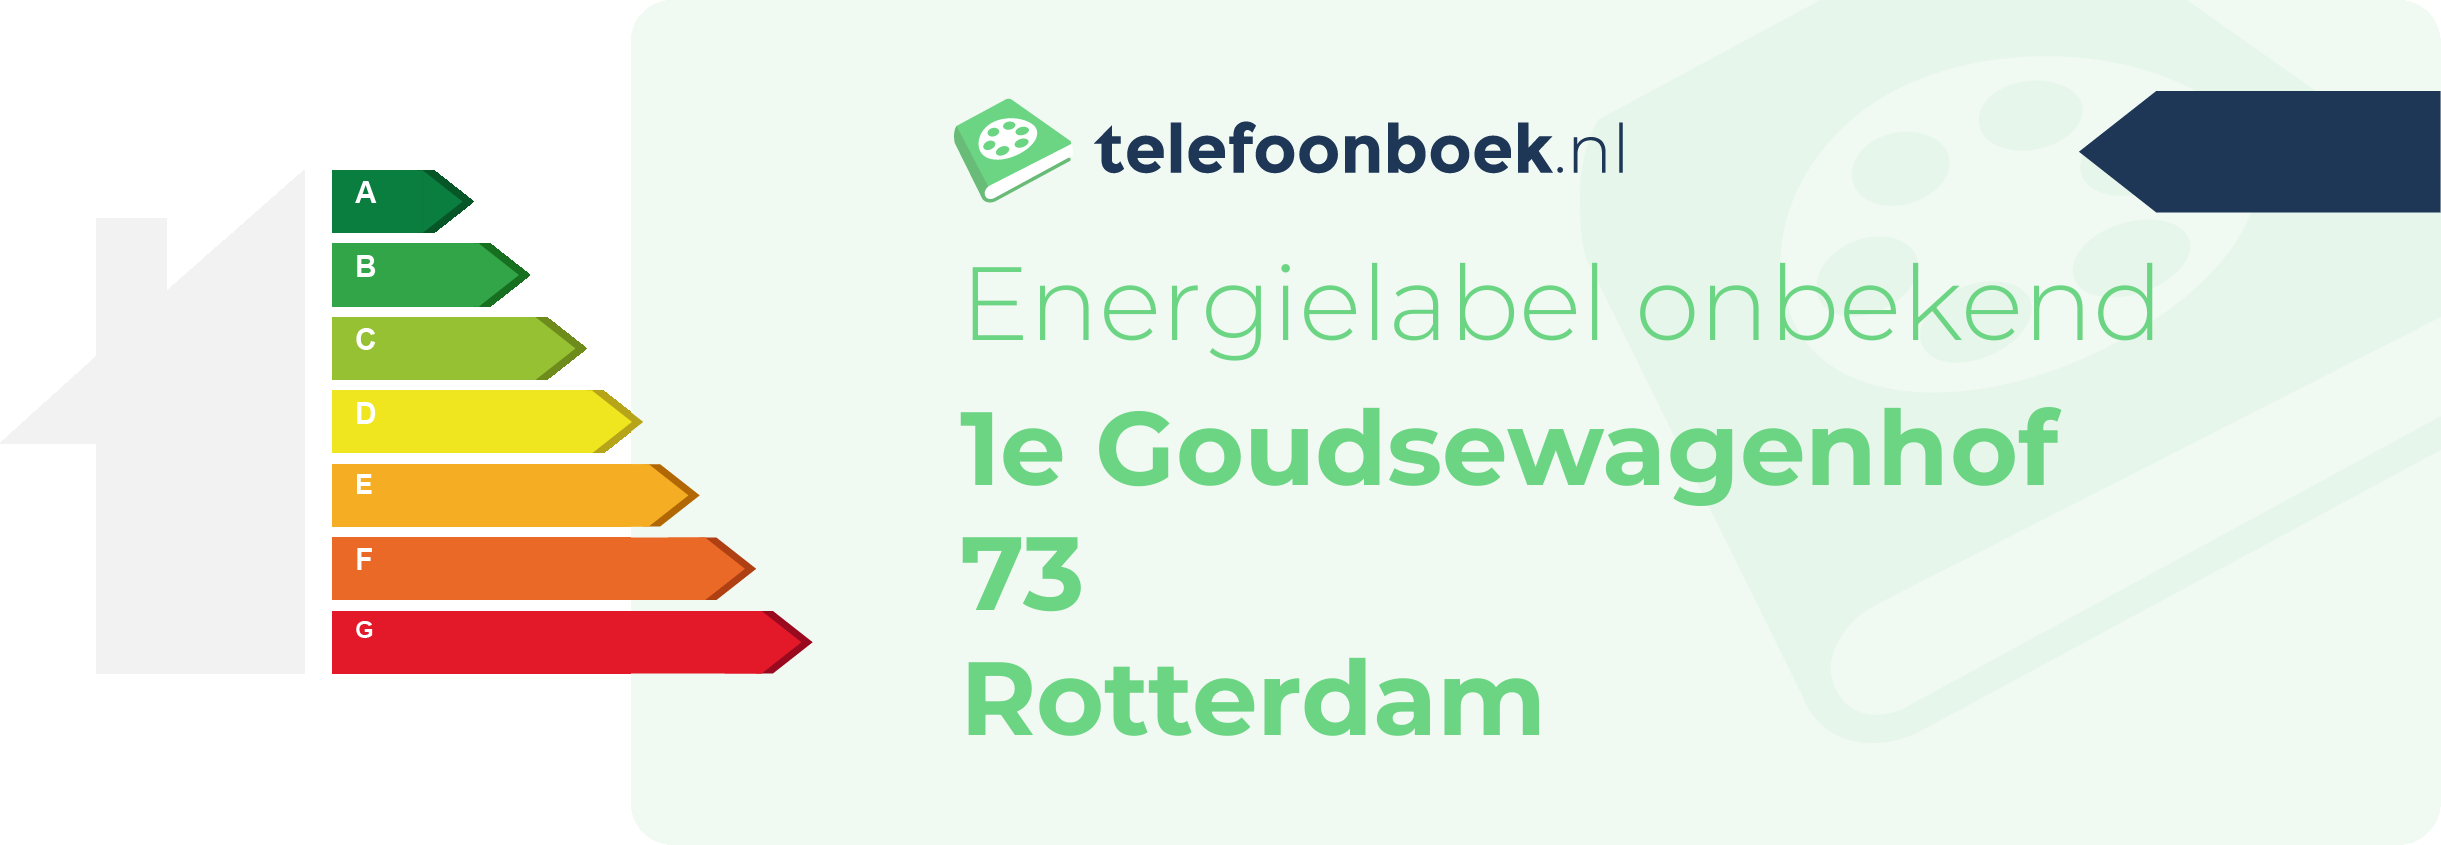 Energielabel 1e Goudsewagenhof 73 Rotterdam